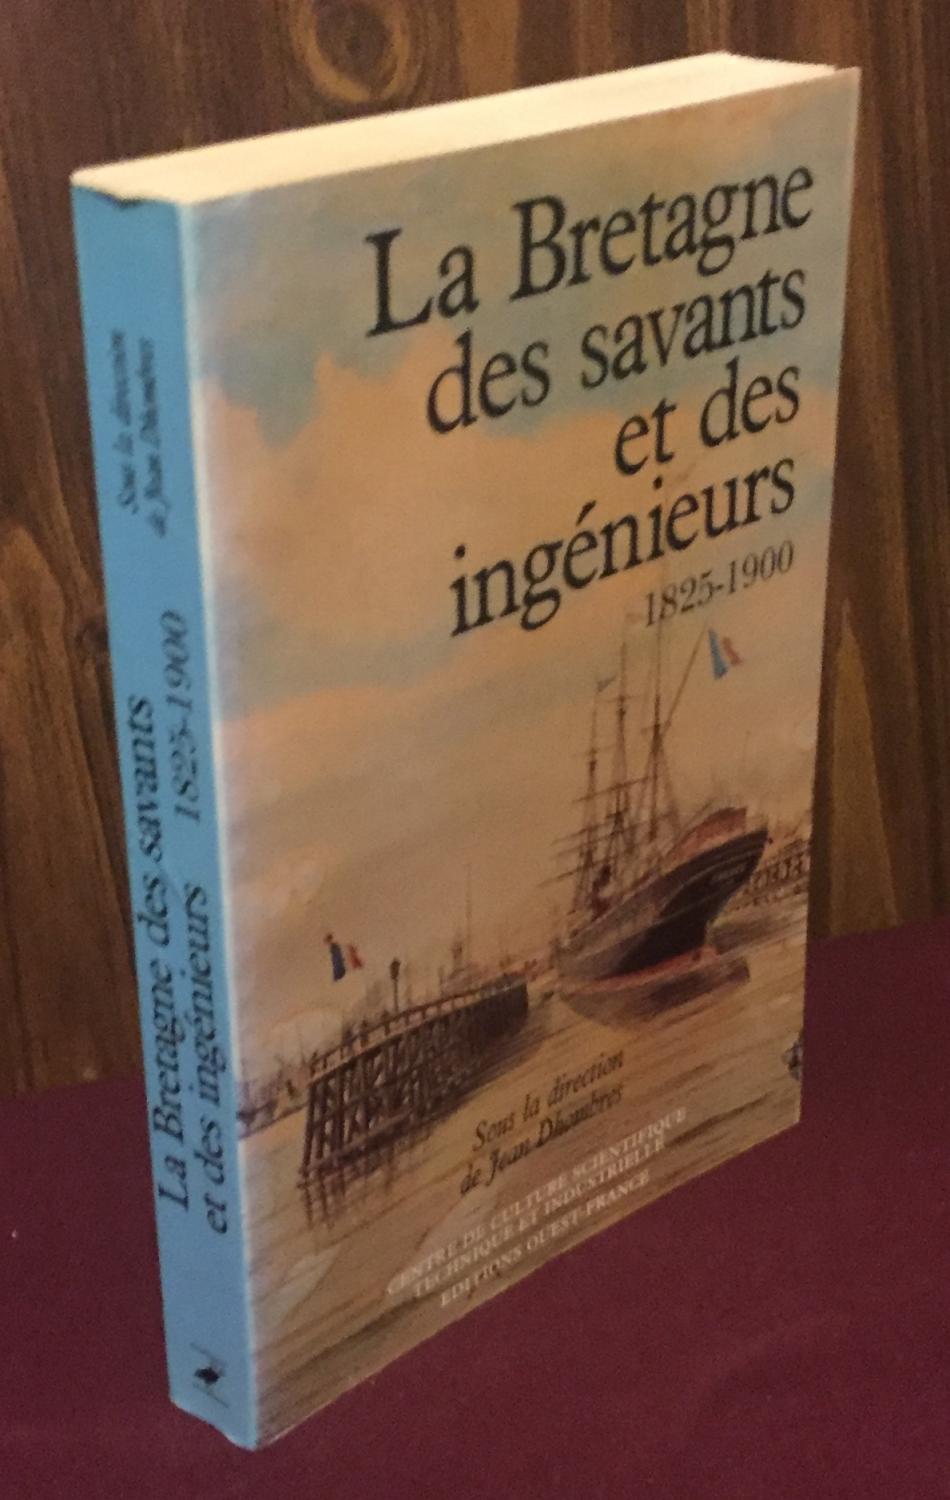 La Bretagne des savants et des ingenieurs, 1825-1900 - Jean Dhombres (Editor)